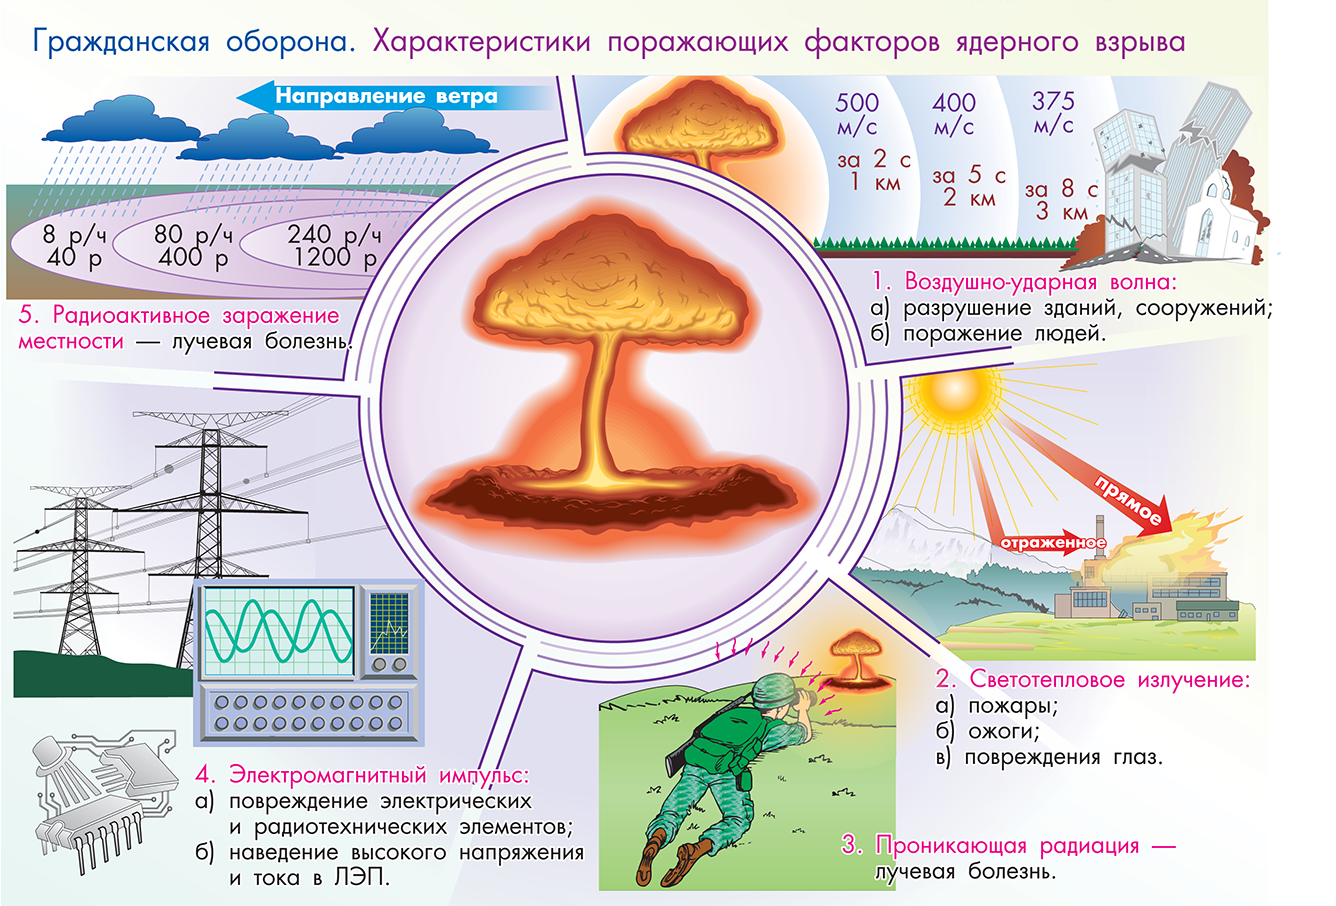 Ядерное оружие факторы ядерного взрыва. Порождающий факьор ядерного оружтя. Ядерное оружие и его поражающие факторы. Факторы ядерного оружия. Поражающие факторы ядерного взрыва.